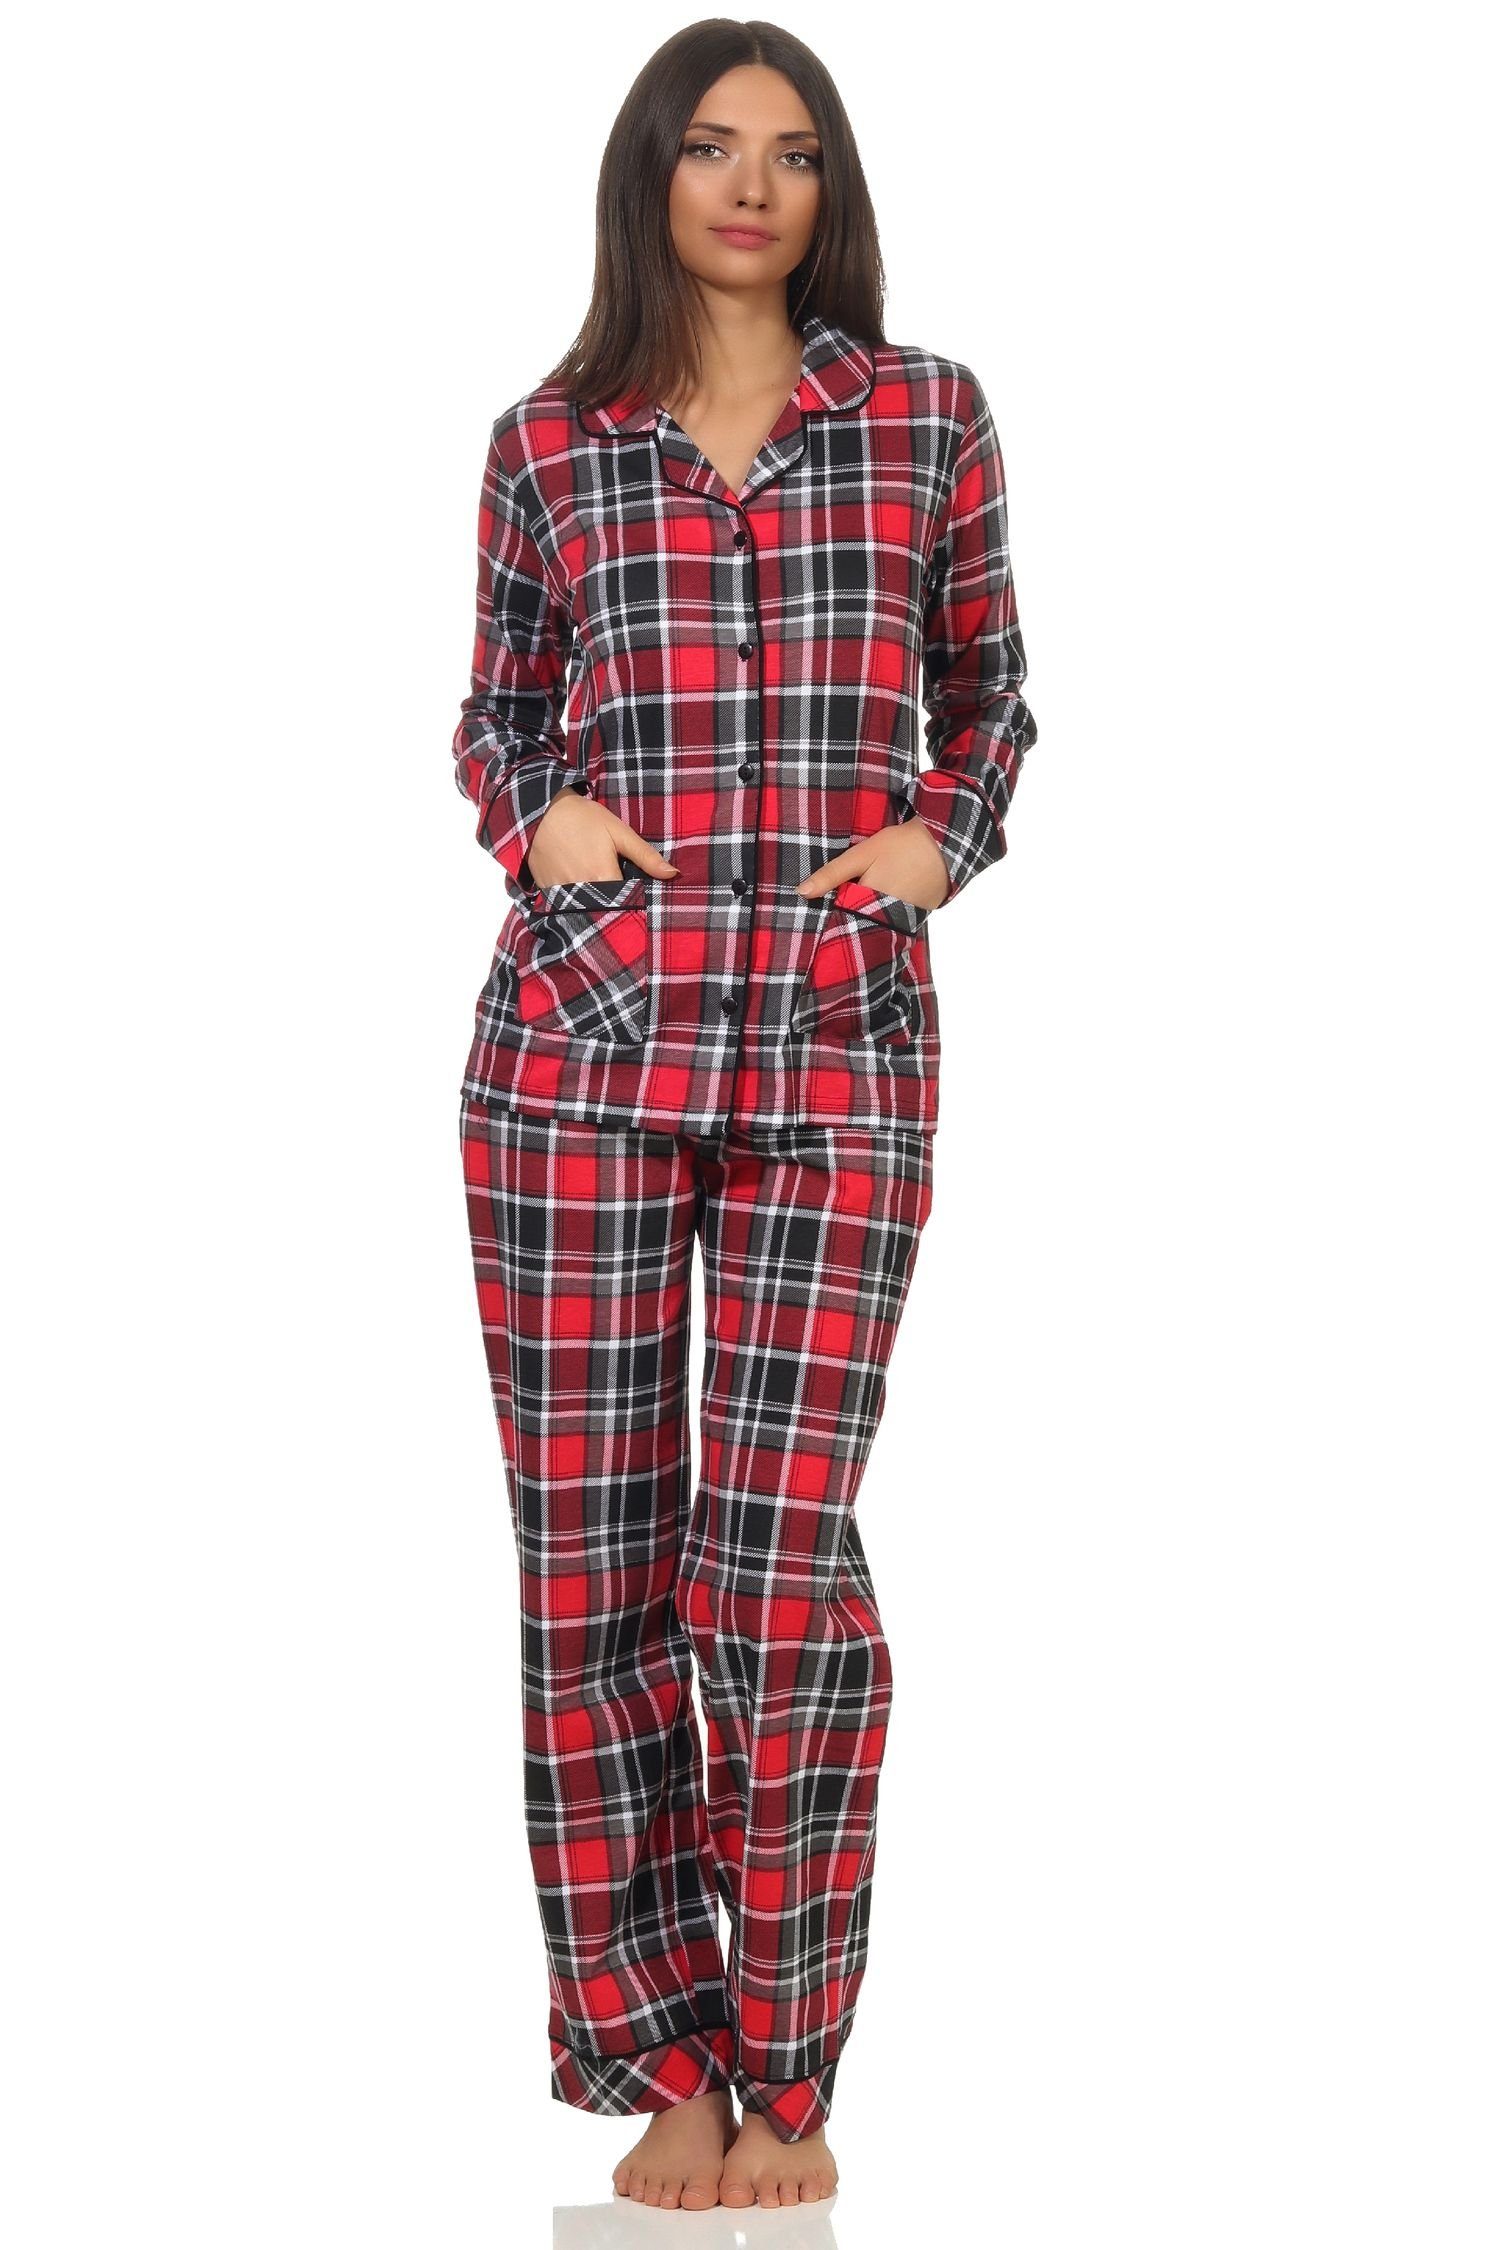 Normann Single in Optik durchknöpfen Pyjama Karo zum Qualität Pyjama Damen Jersey in